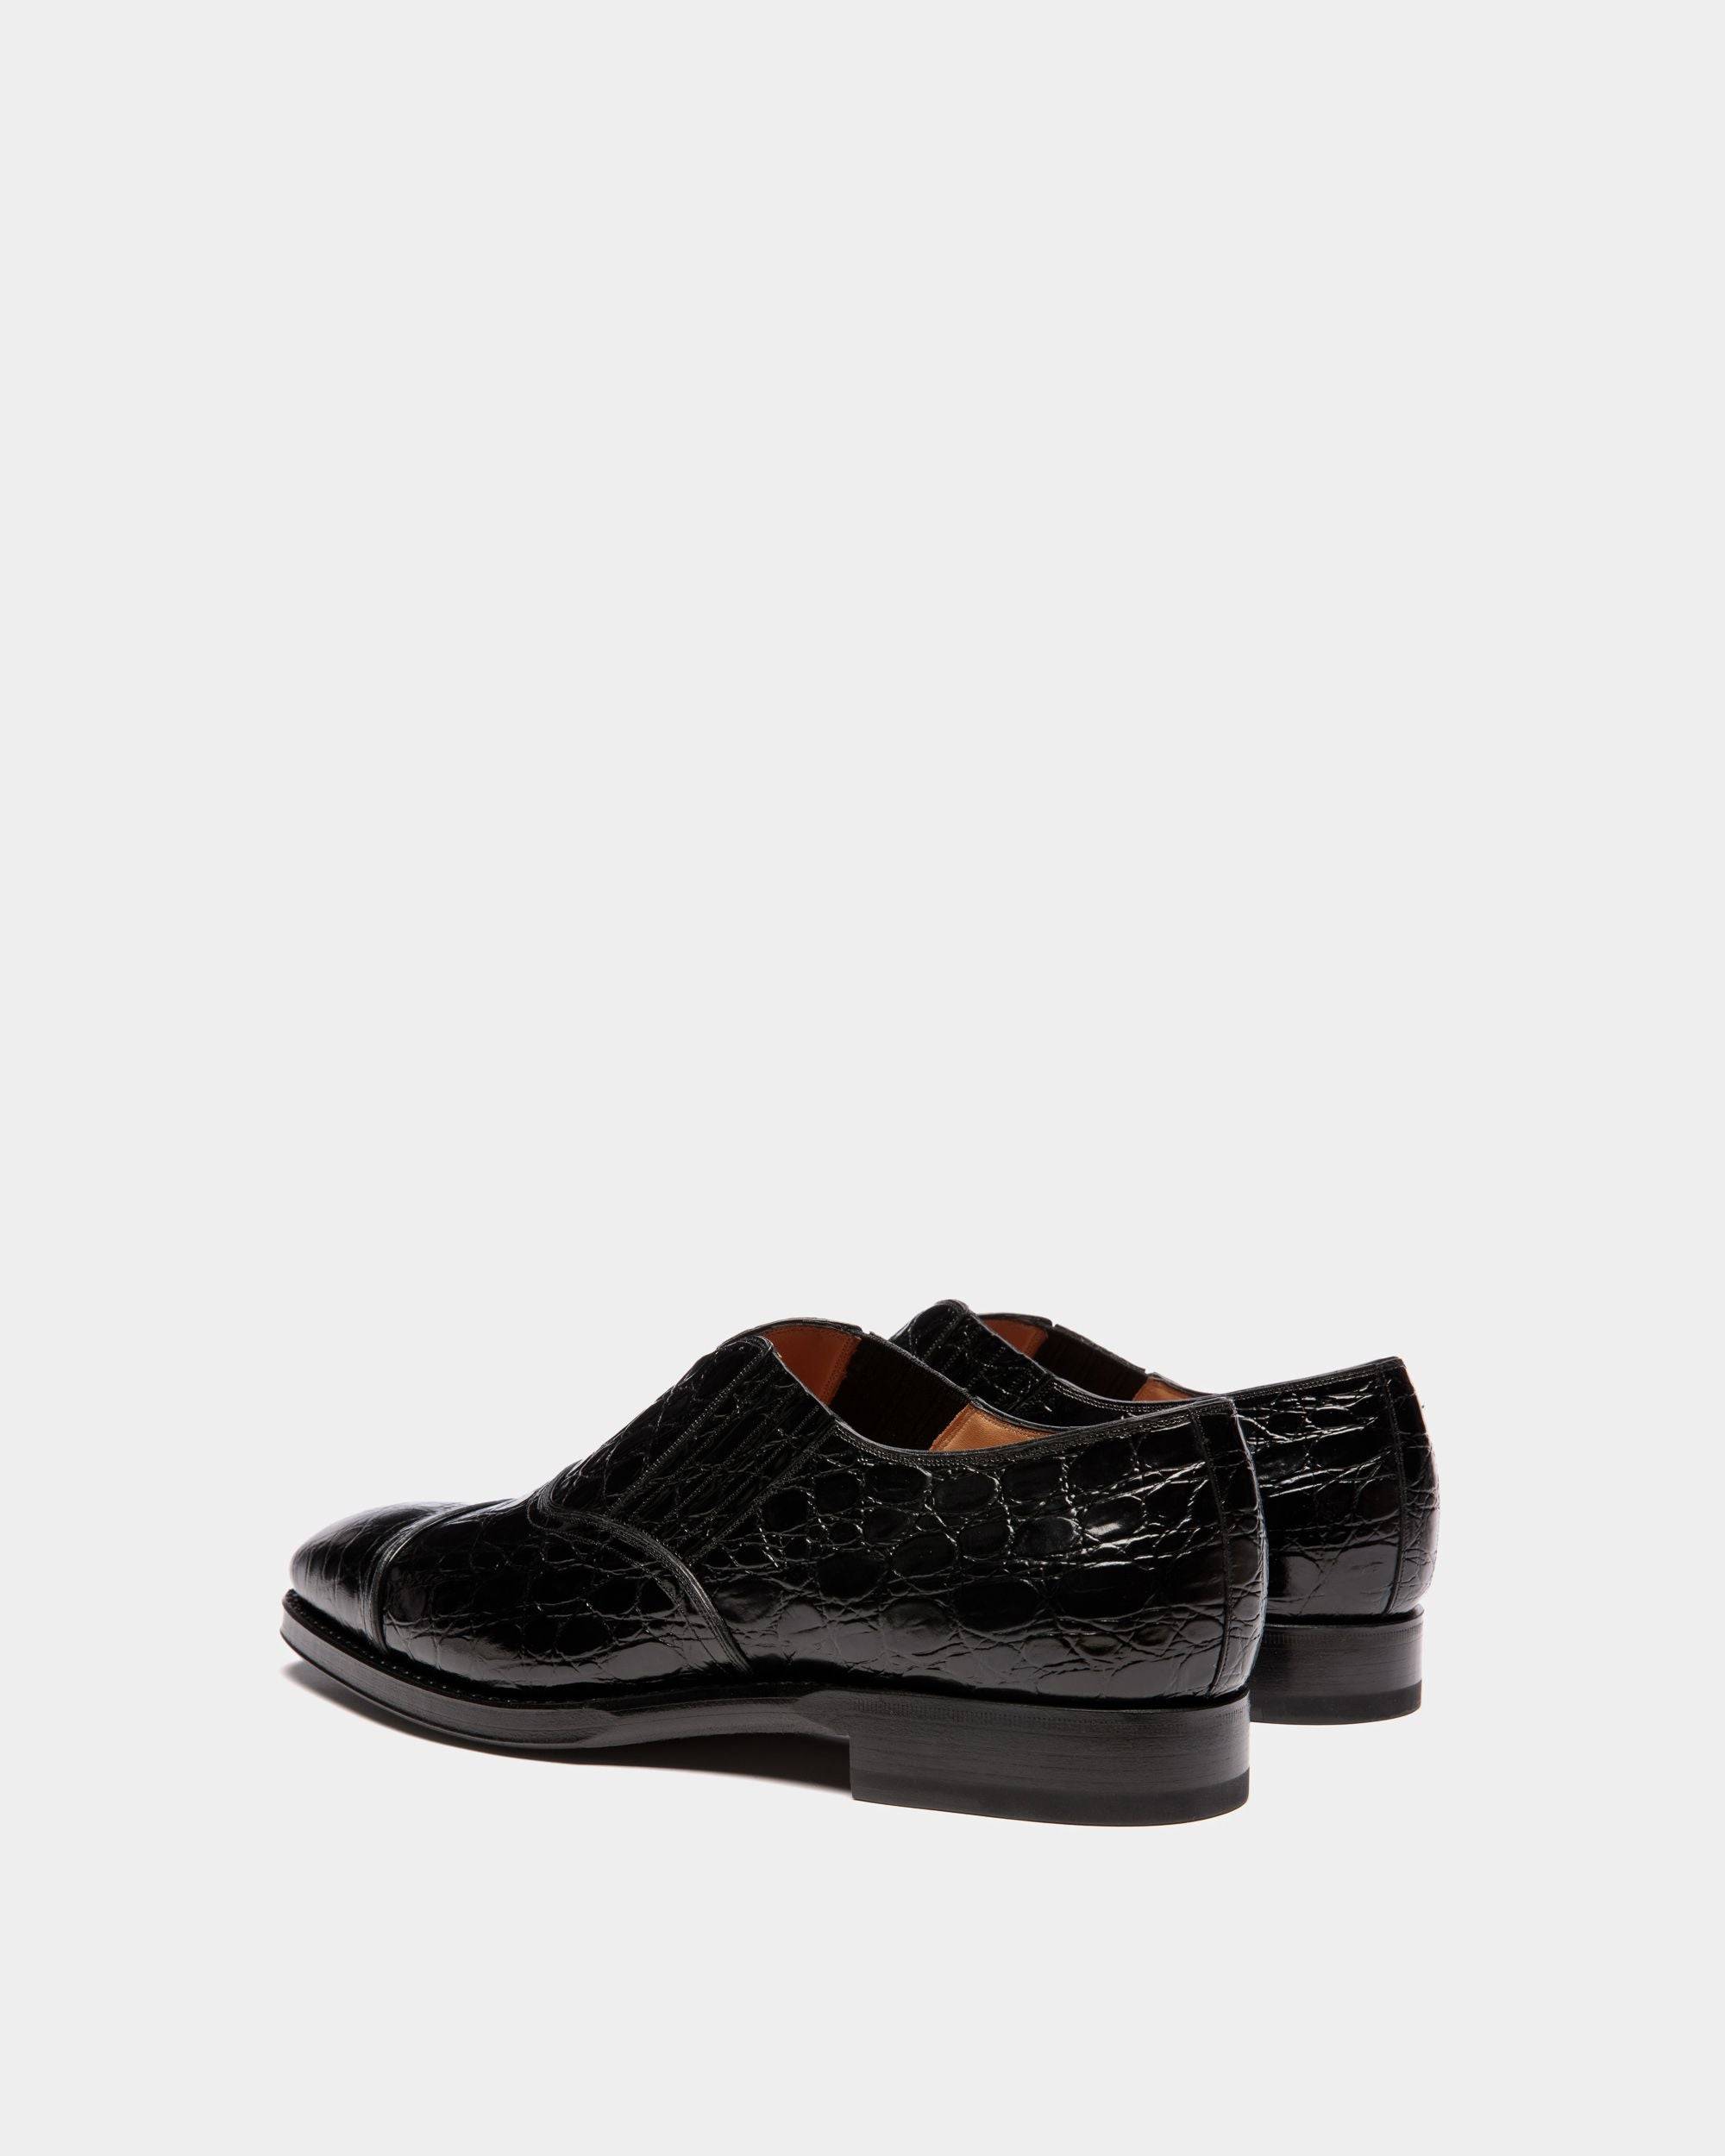 Scribe | Loafers für Herren aus bedrucktem Leder in Schwarz | Bally | Still Life 3/4 Rückseite